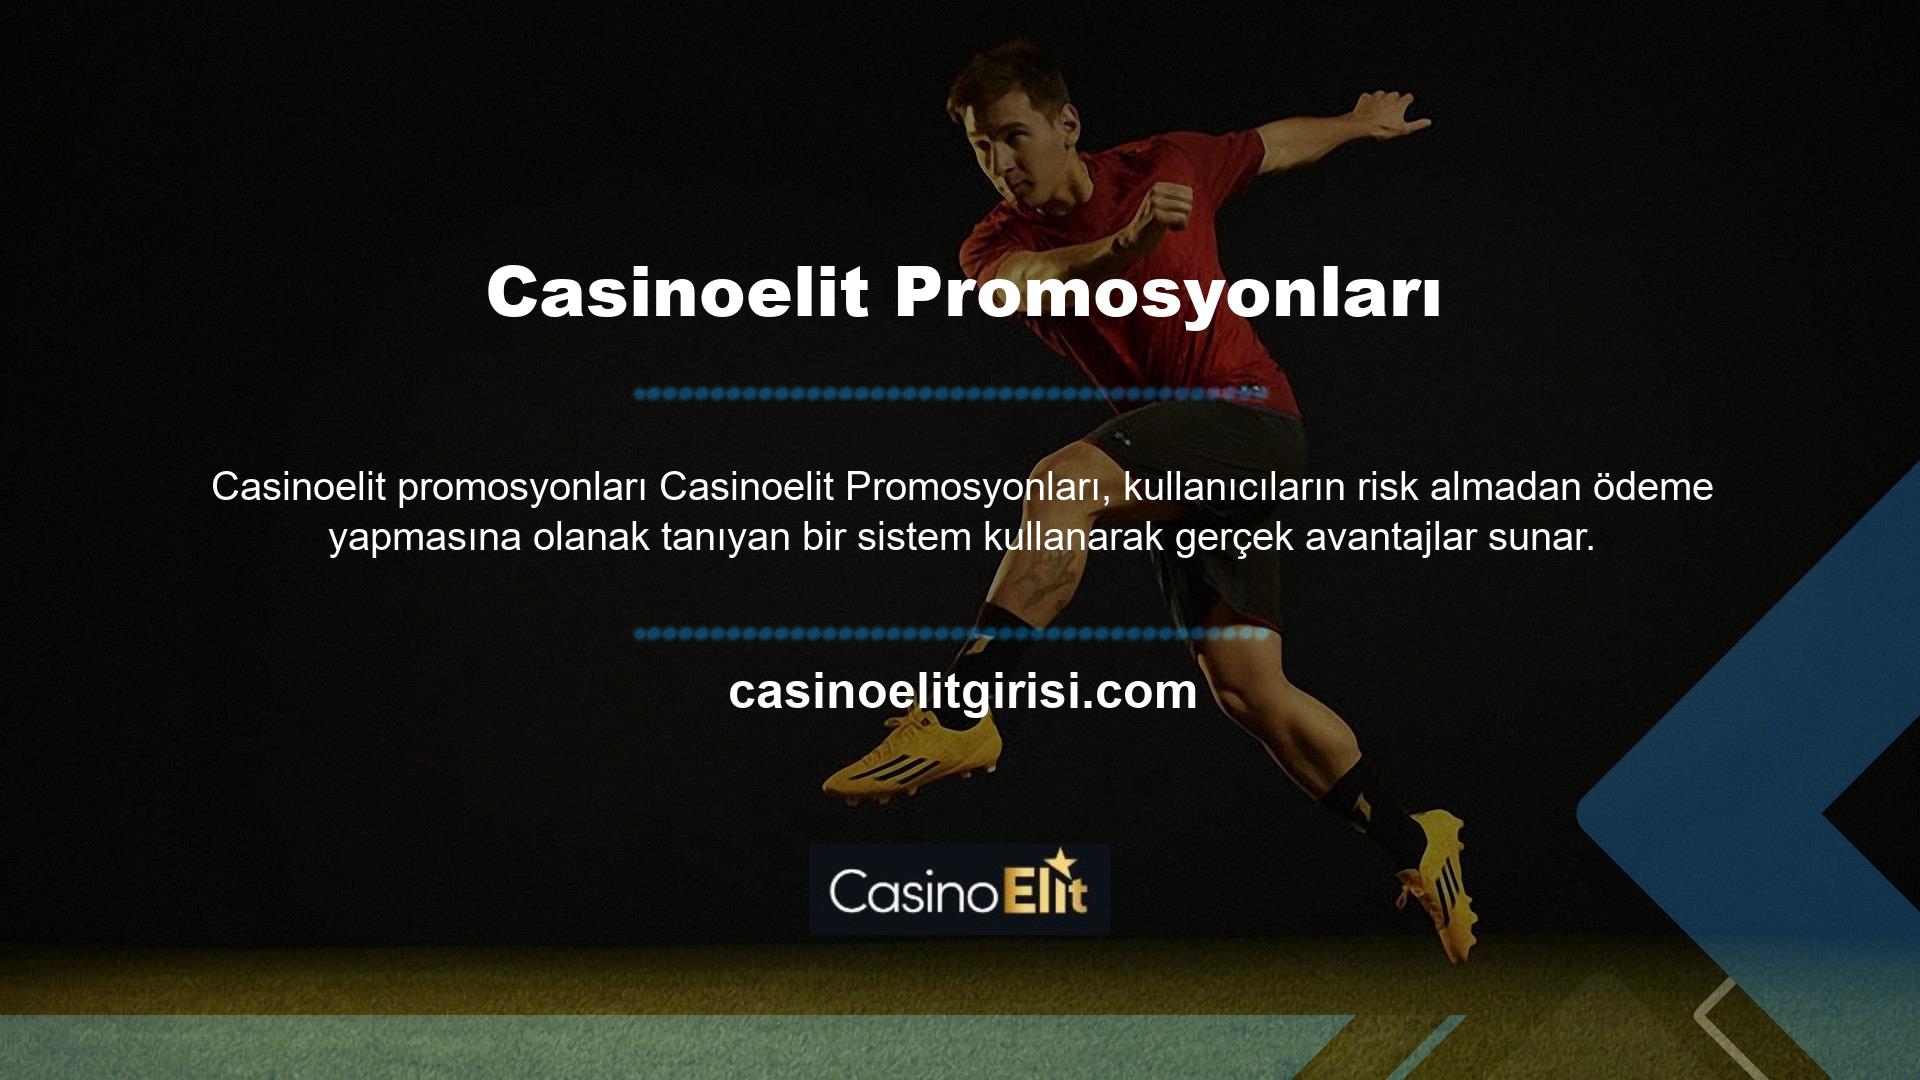 Casinoelit İndirme Seçenekleri, Casinoelit İndirme Seçenekleri farklı platformlarda değerlendirilebilir ve kullanılabilir